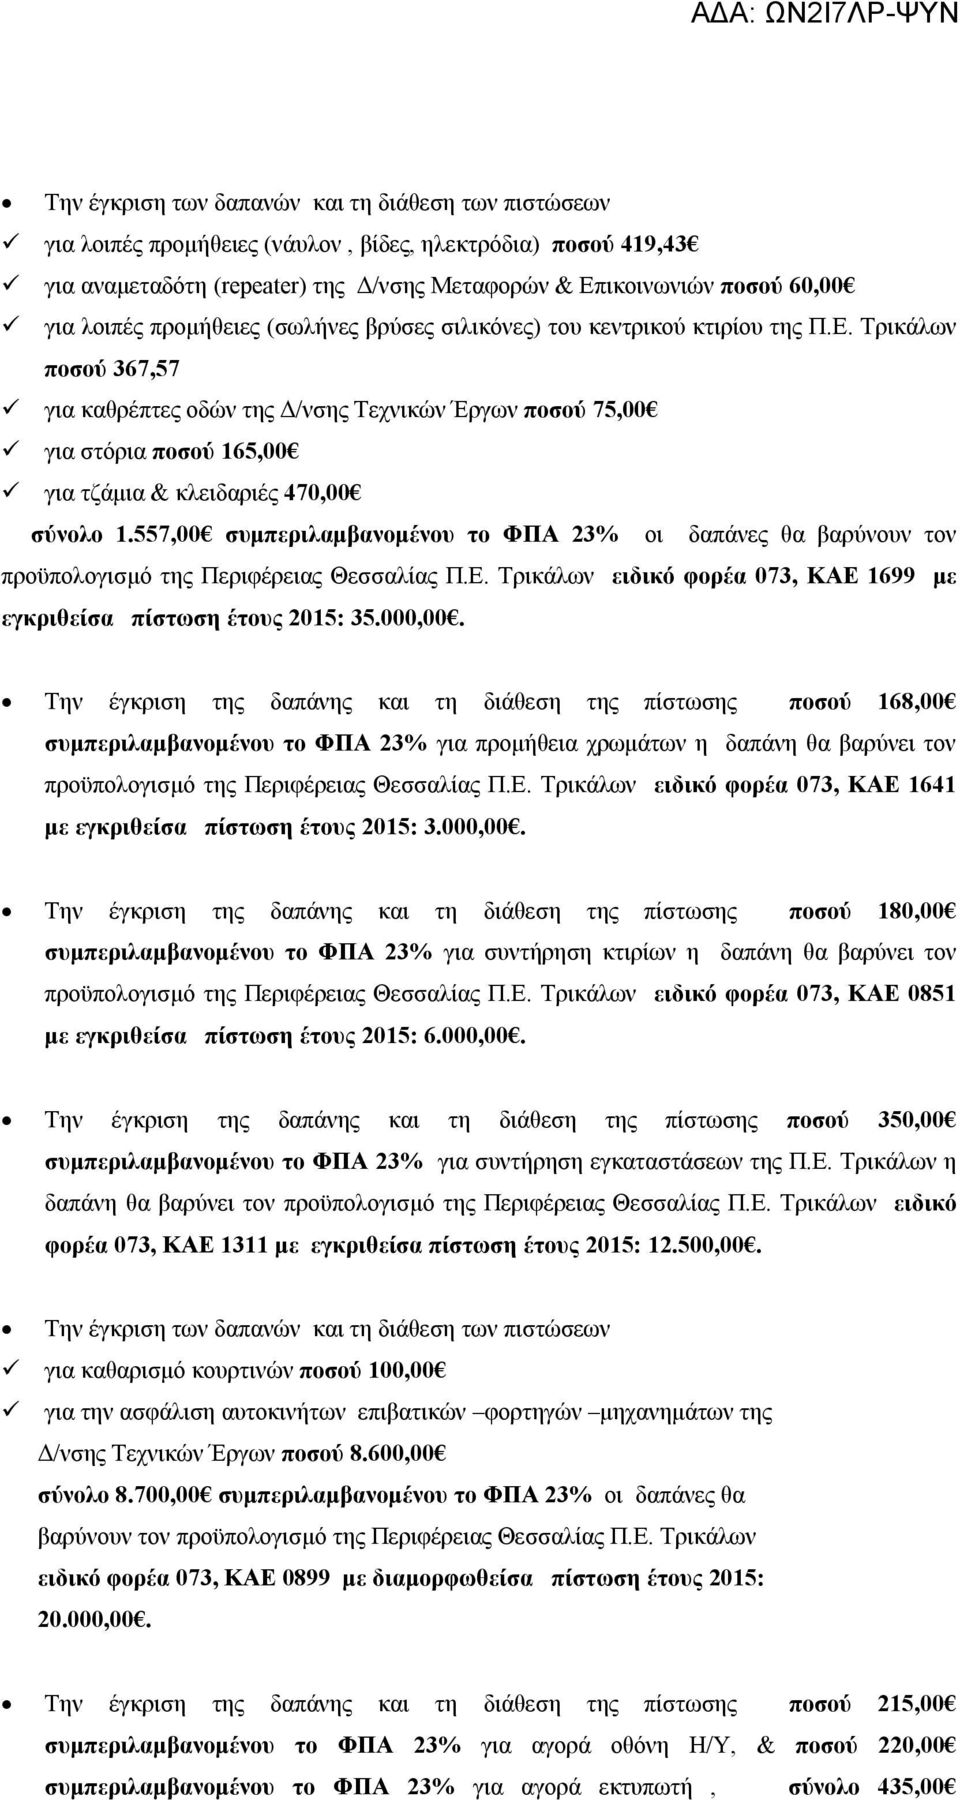 557,00 συμπεριλαμβανομένου το ΦΠΑ 23% οι δαπάνες θα βαρύνουν τον προϋπολογισμό της Περιφέρειας Θεσσαλίας Π.Ε. Τρικάλων ειδικό φορέα 073, ΚΑΕ 1699 με εγκριθείσα πίστωση έτους 2015: 35.000,00.